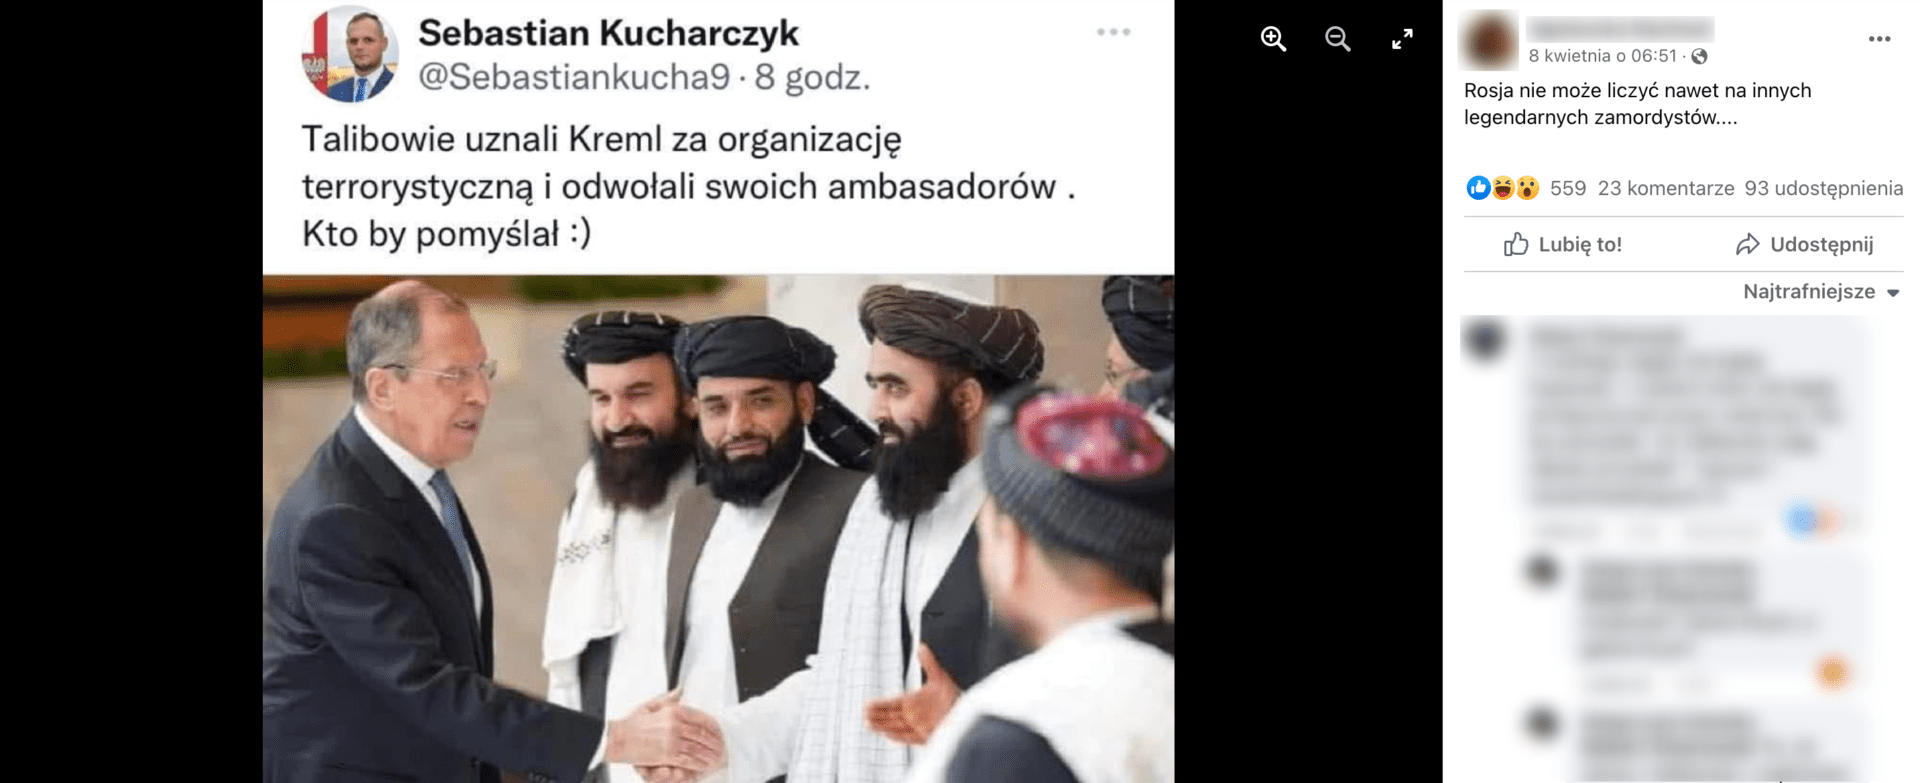 Zrzut ekranu przedstawiający wpis na Facebooku, w którym stwierdzono, że talibowie uznali Kreml za organizację terrorystyczną. Widoczna jest liczba reakcji na post: 559 polubień, 23 komentarze, 93 udostępnienia.